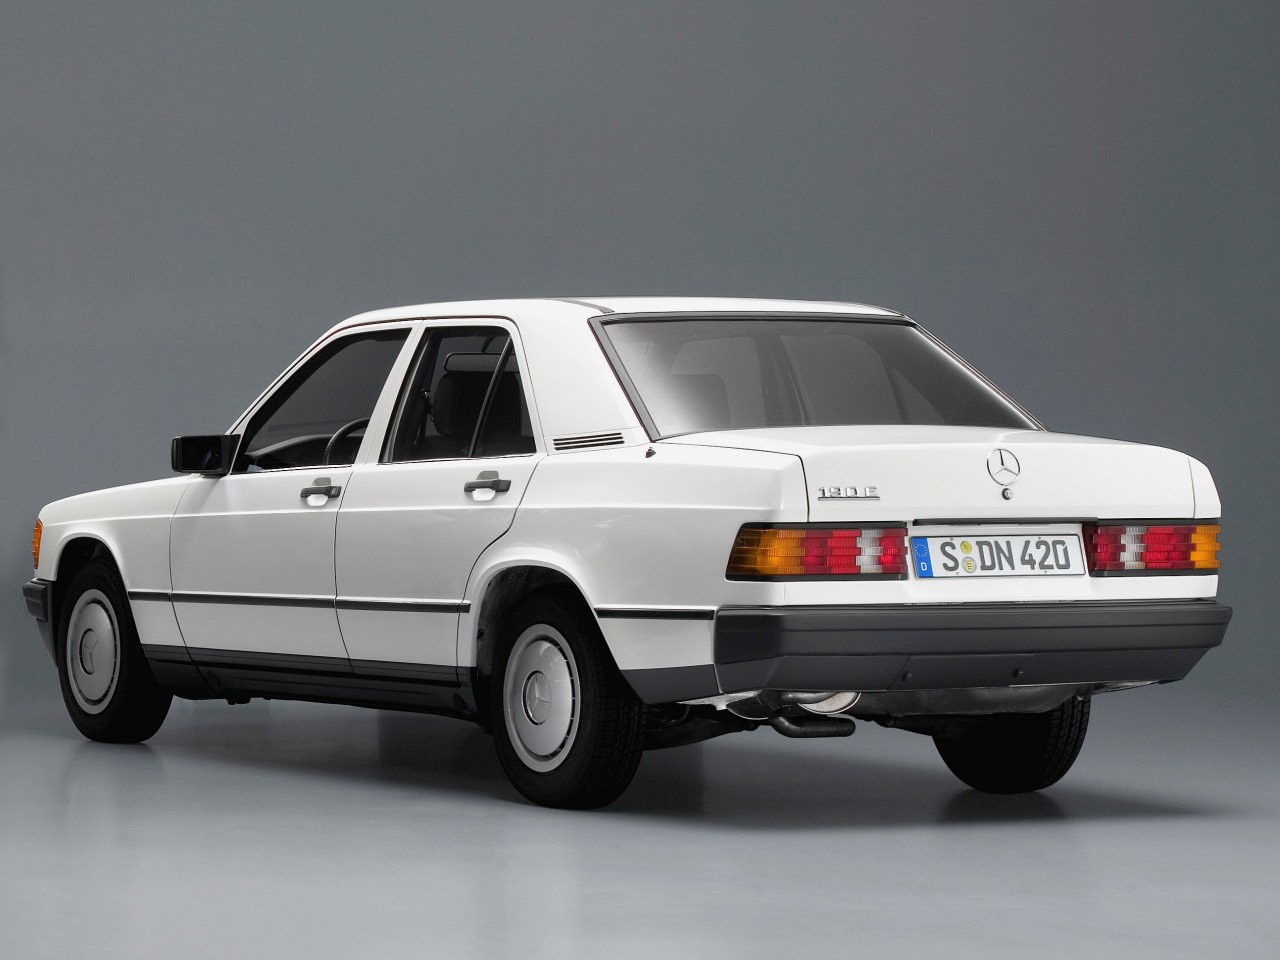 Mercedes-Benz 190: specs, history, models